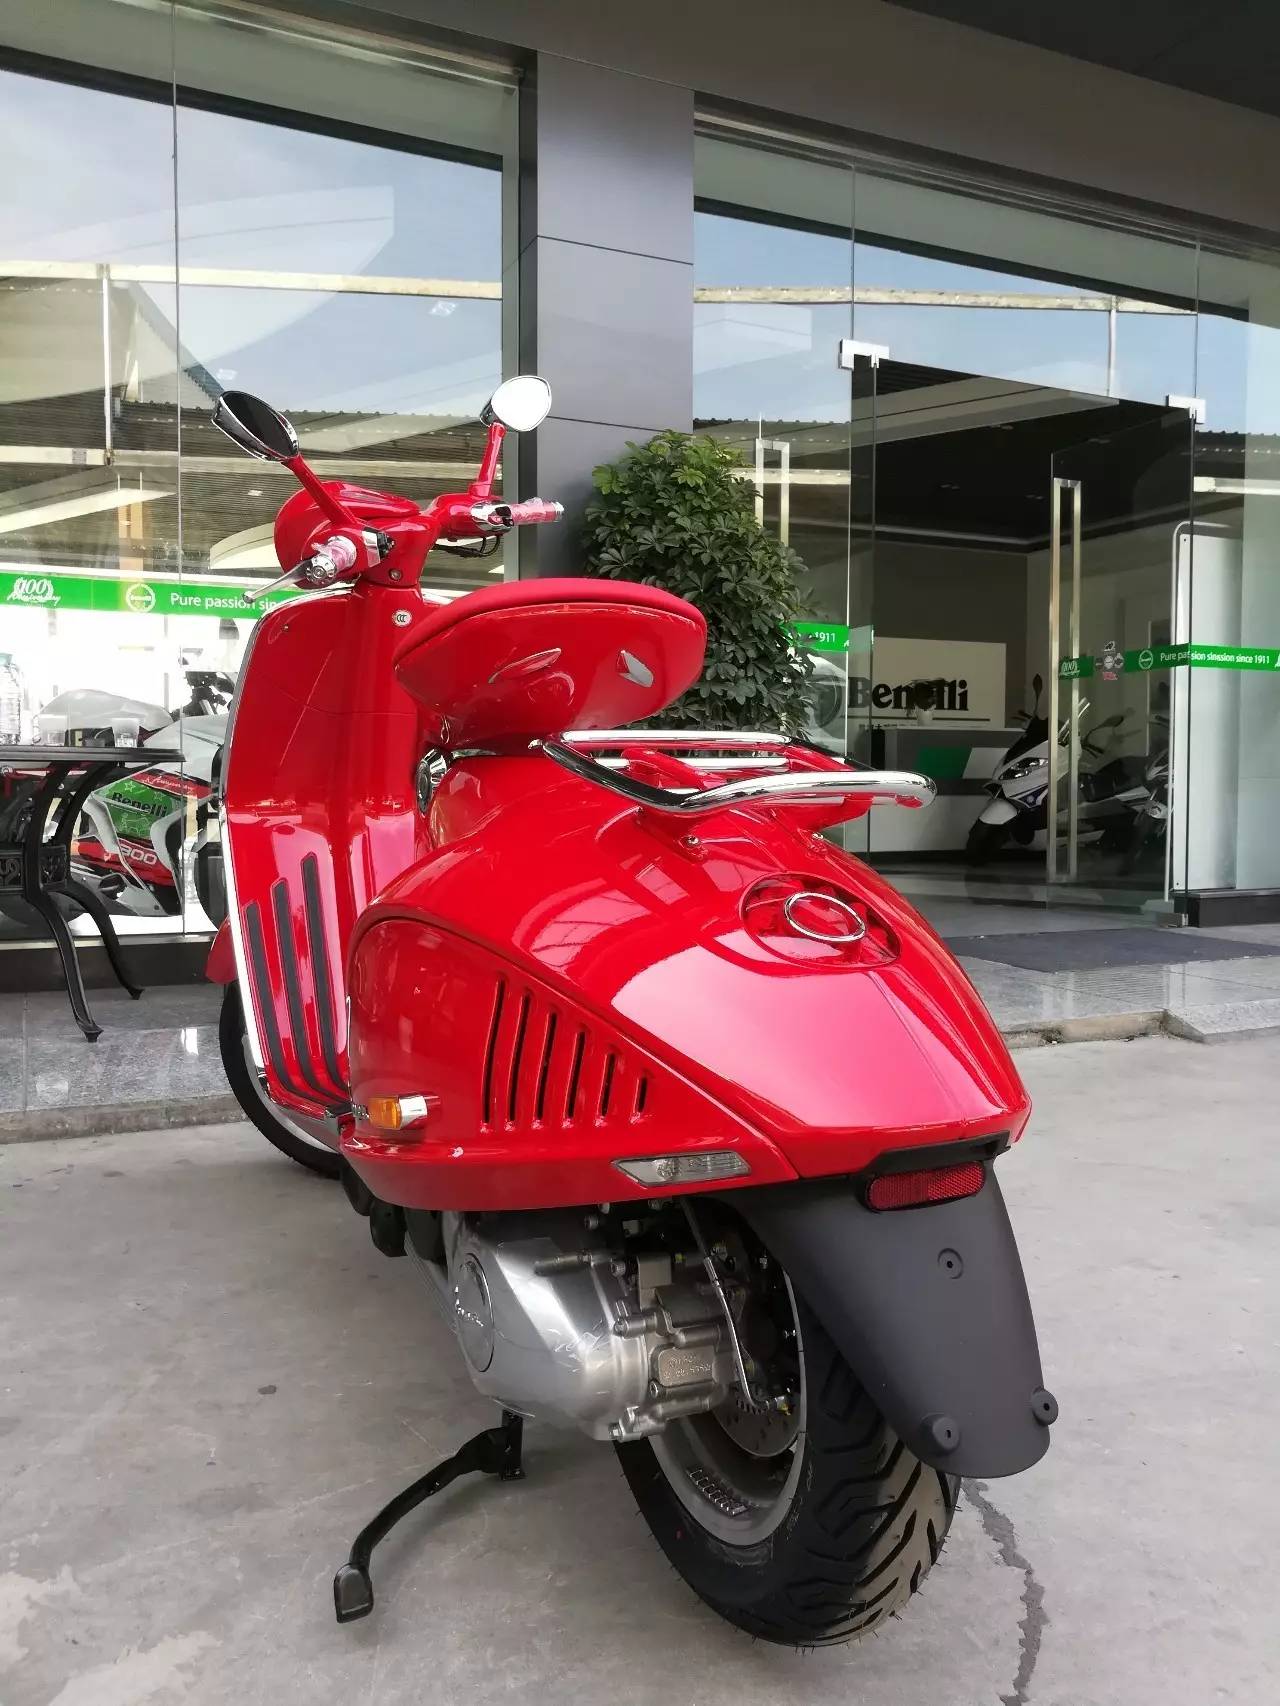 【贵州首台】世界上最红踏板,只有亲眼所见,才能感受这辆vespa 946